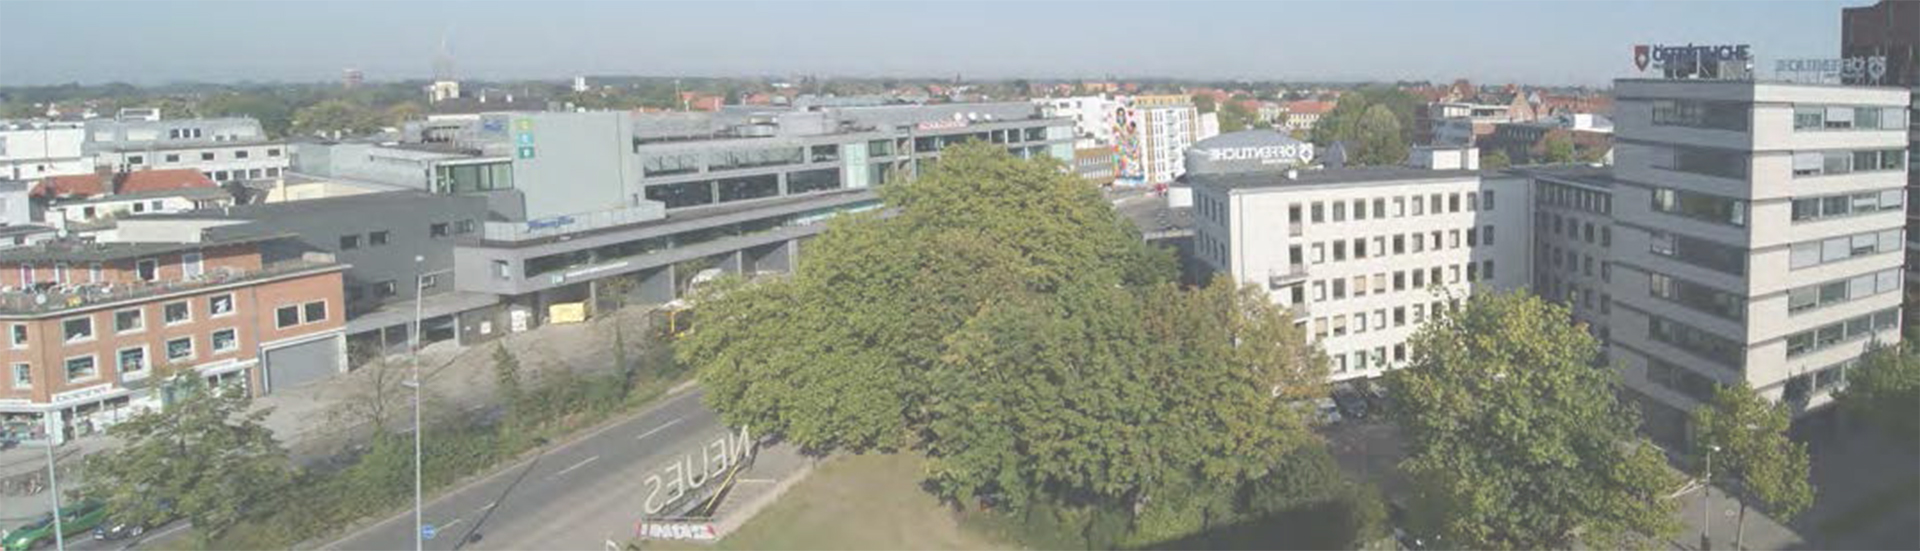 Öffentliche Oldenburg Gebäude Luftaufnahme